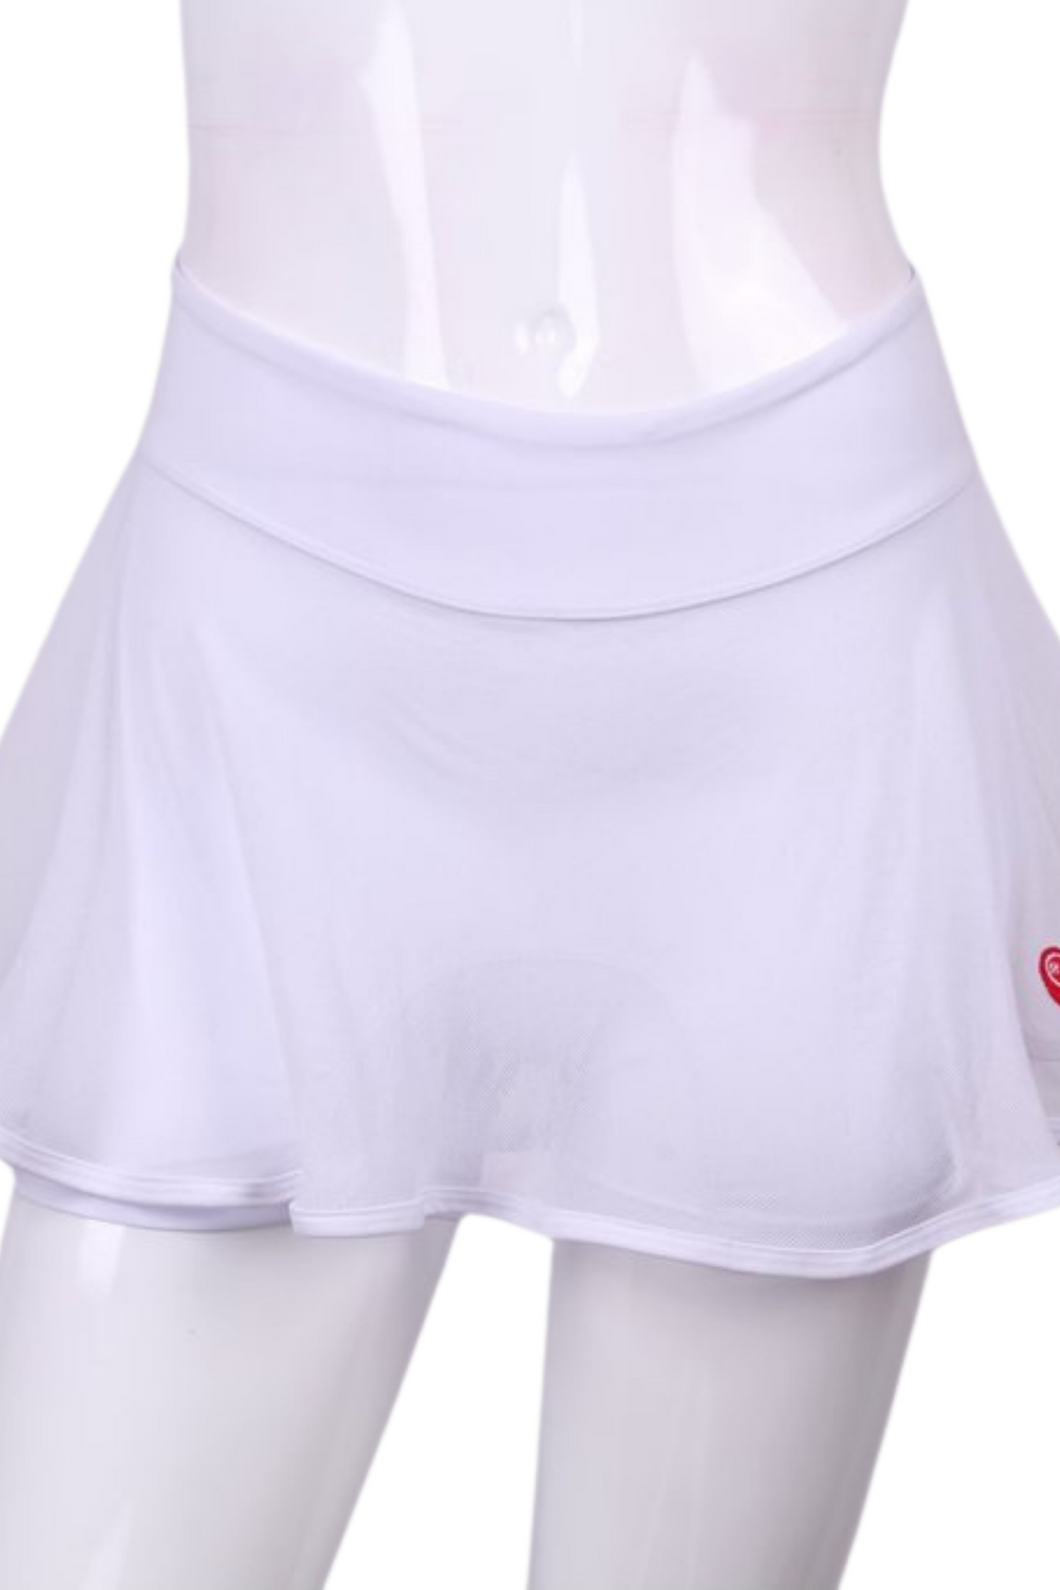 White Mesh Love O Tennis Skirt - I LOVE MY DOUBLES PARTNER!!!